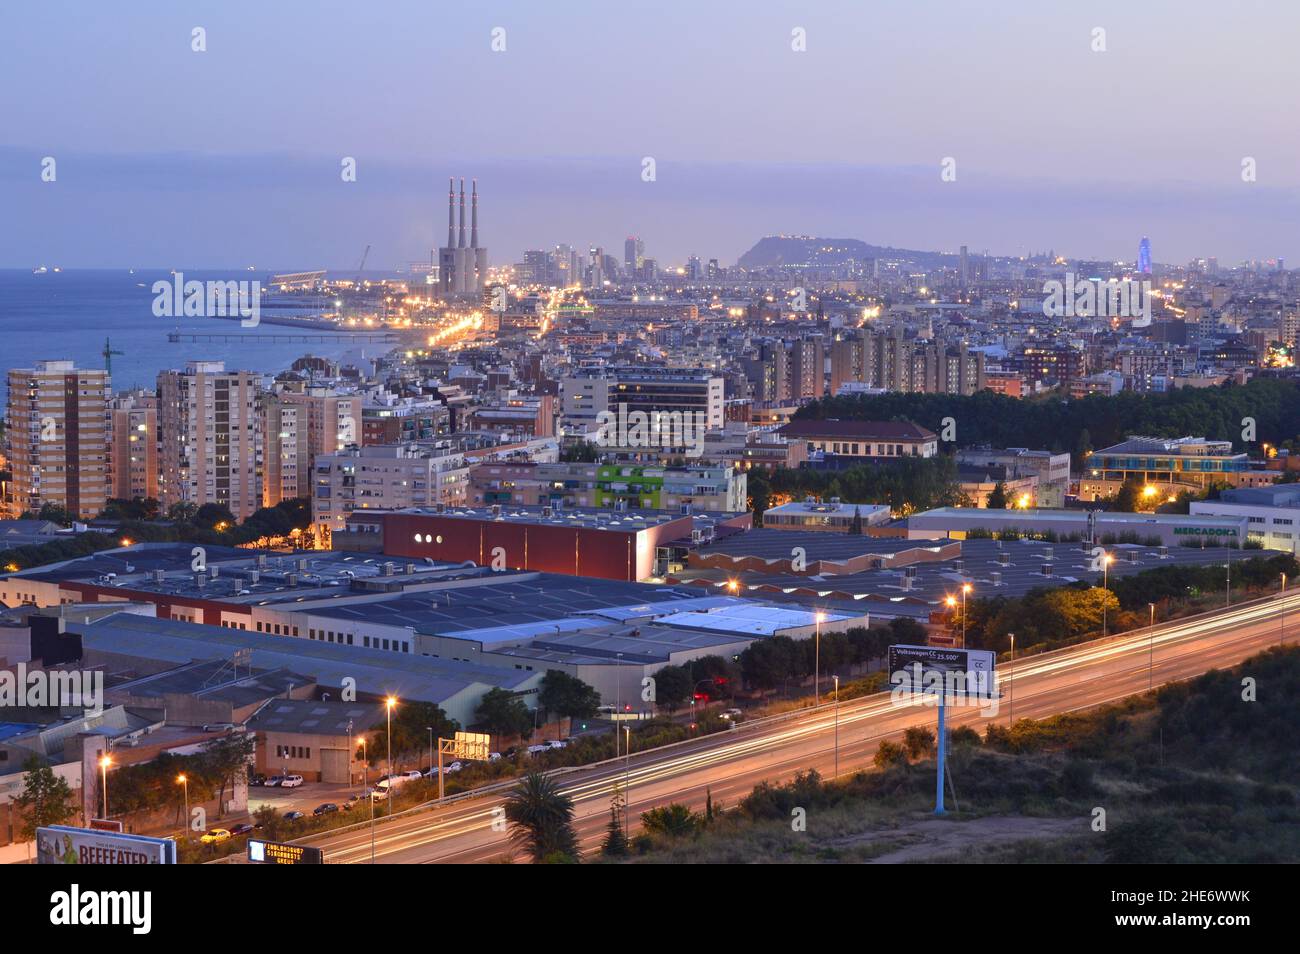 Industrieller Vorort von Badalona mit Lagerhäusern und der Stadt Barcelona im Hintergrund, erhöhte Ansicht in der Dämmerung, Katalonien Spanien. Stockfoto